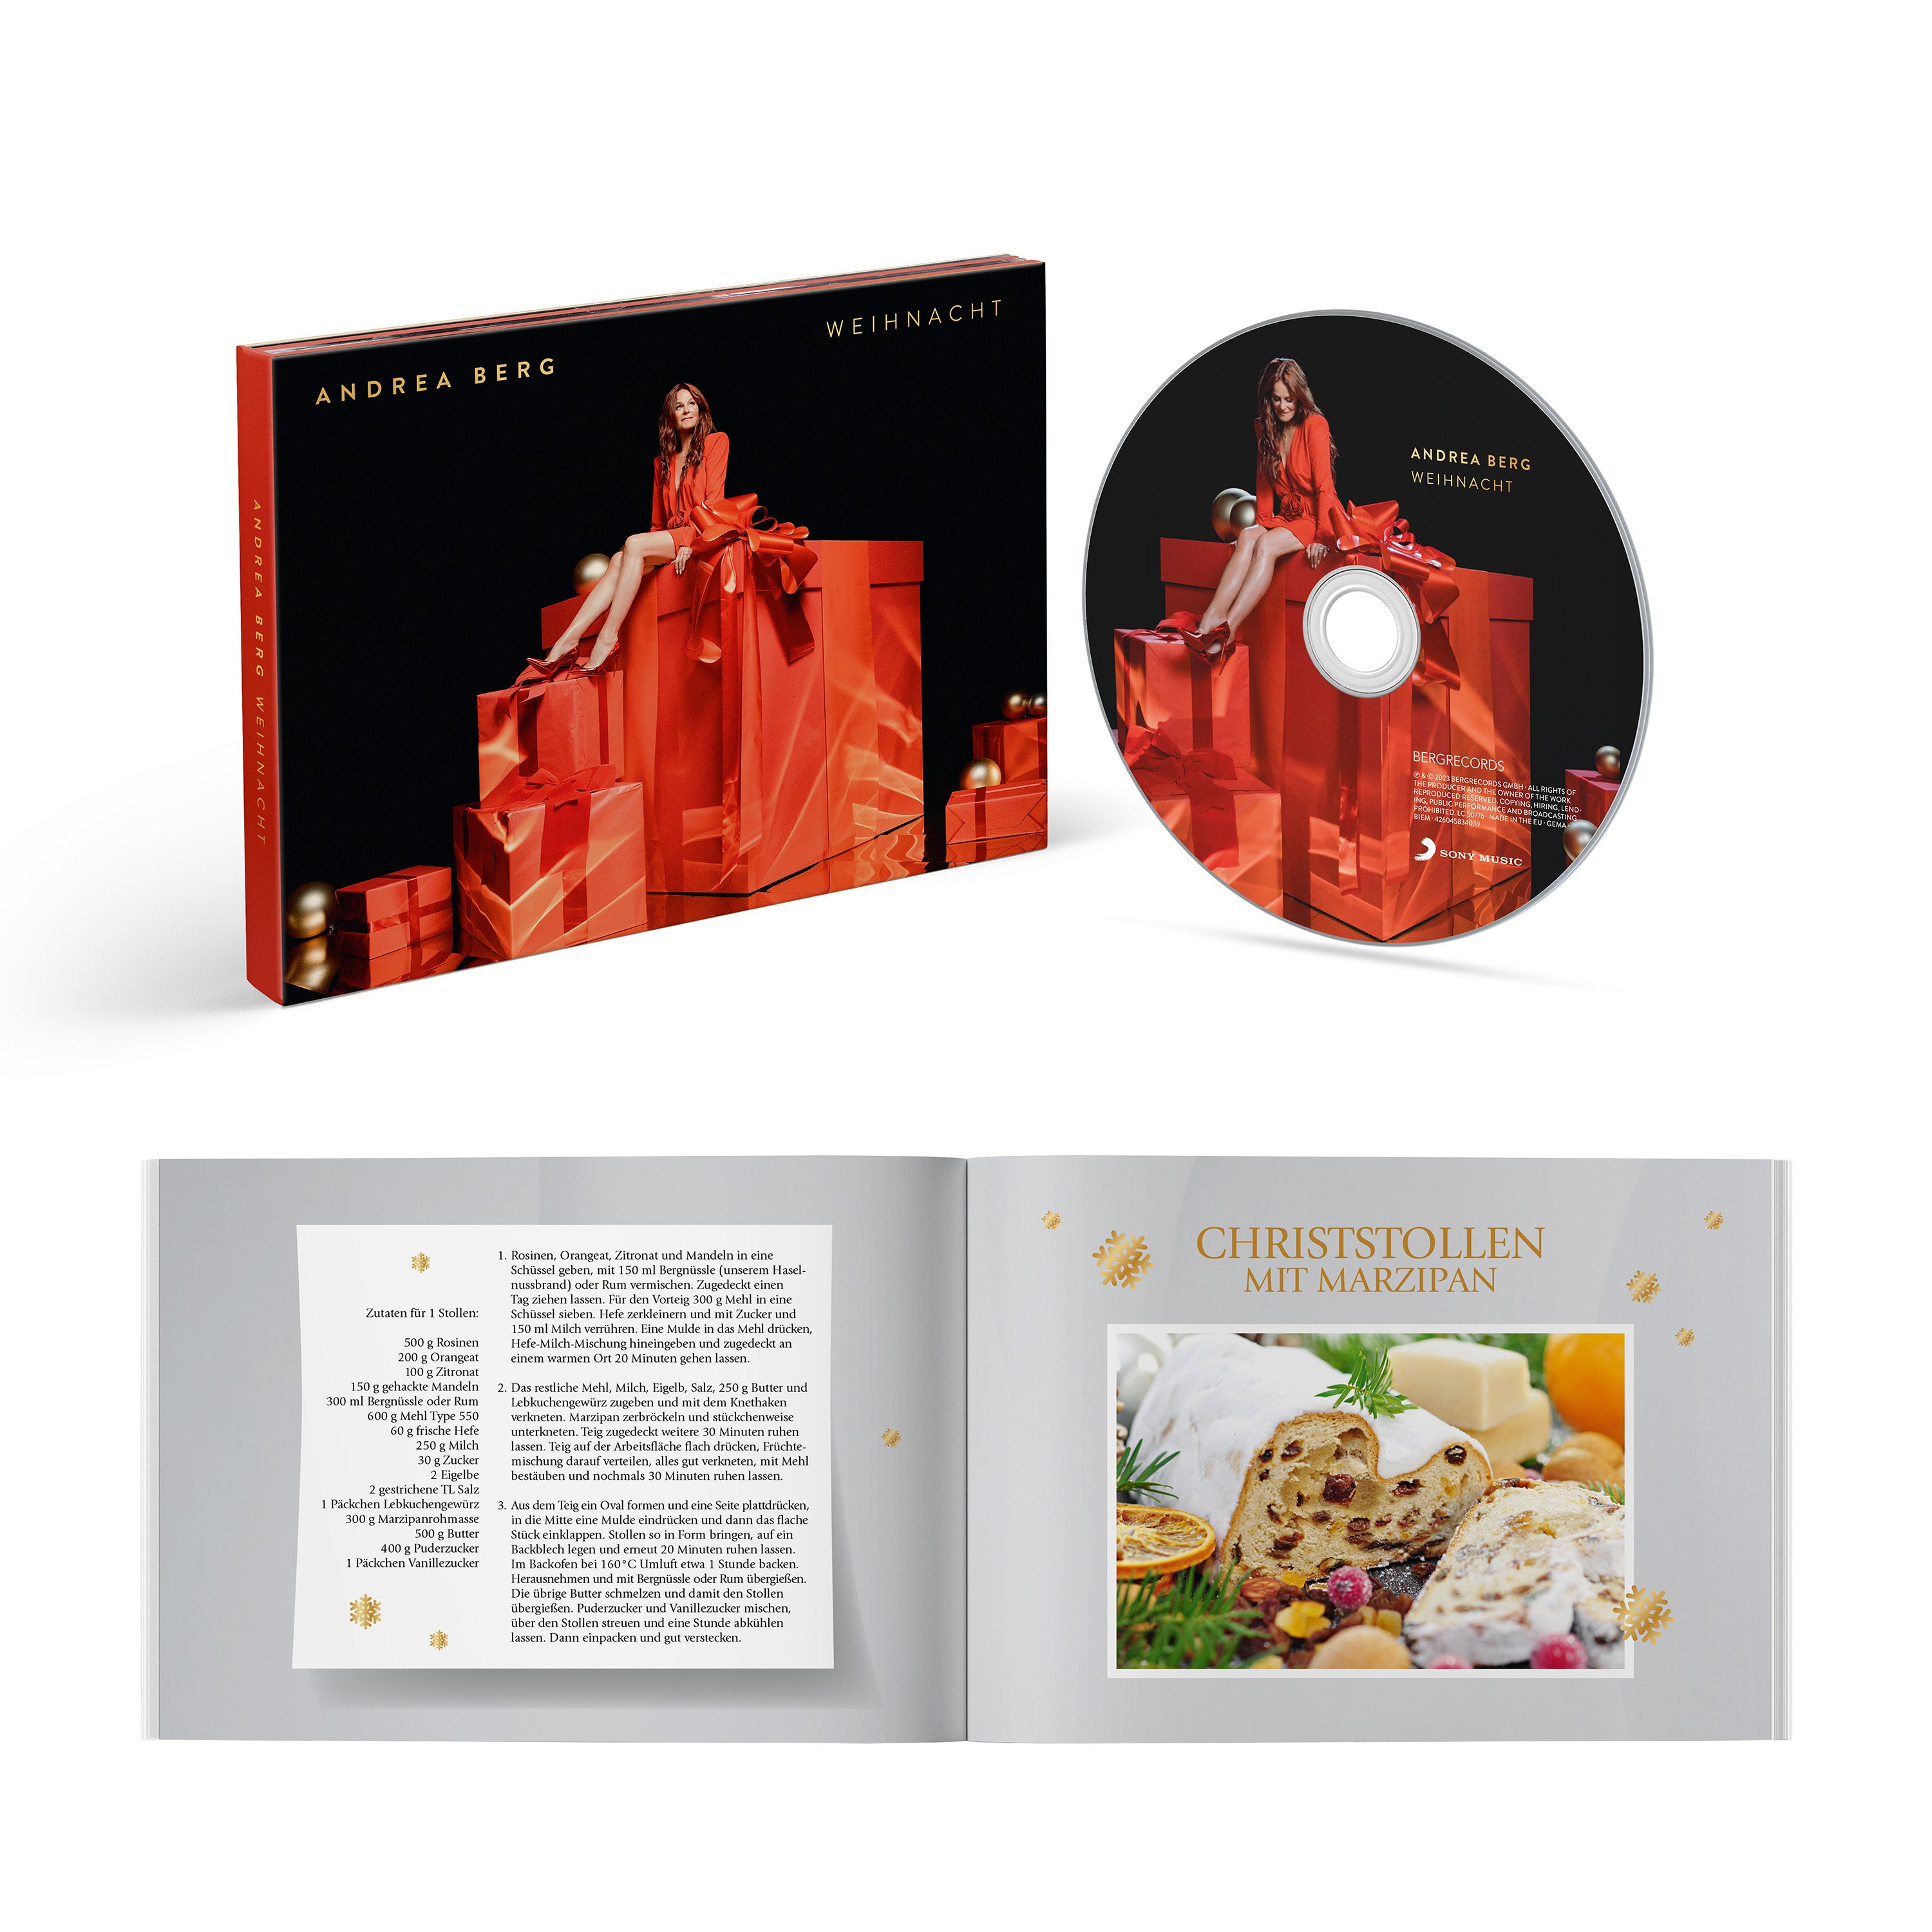 Weihnacht: Limitiertes Hardcoverbook mit Weihnachtsrezepten und CD